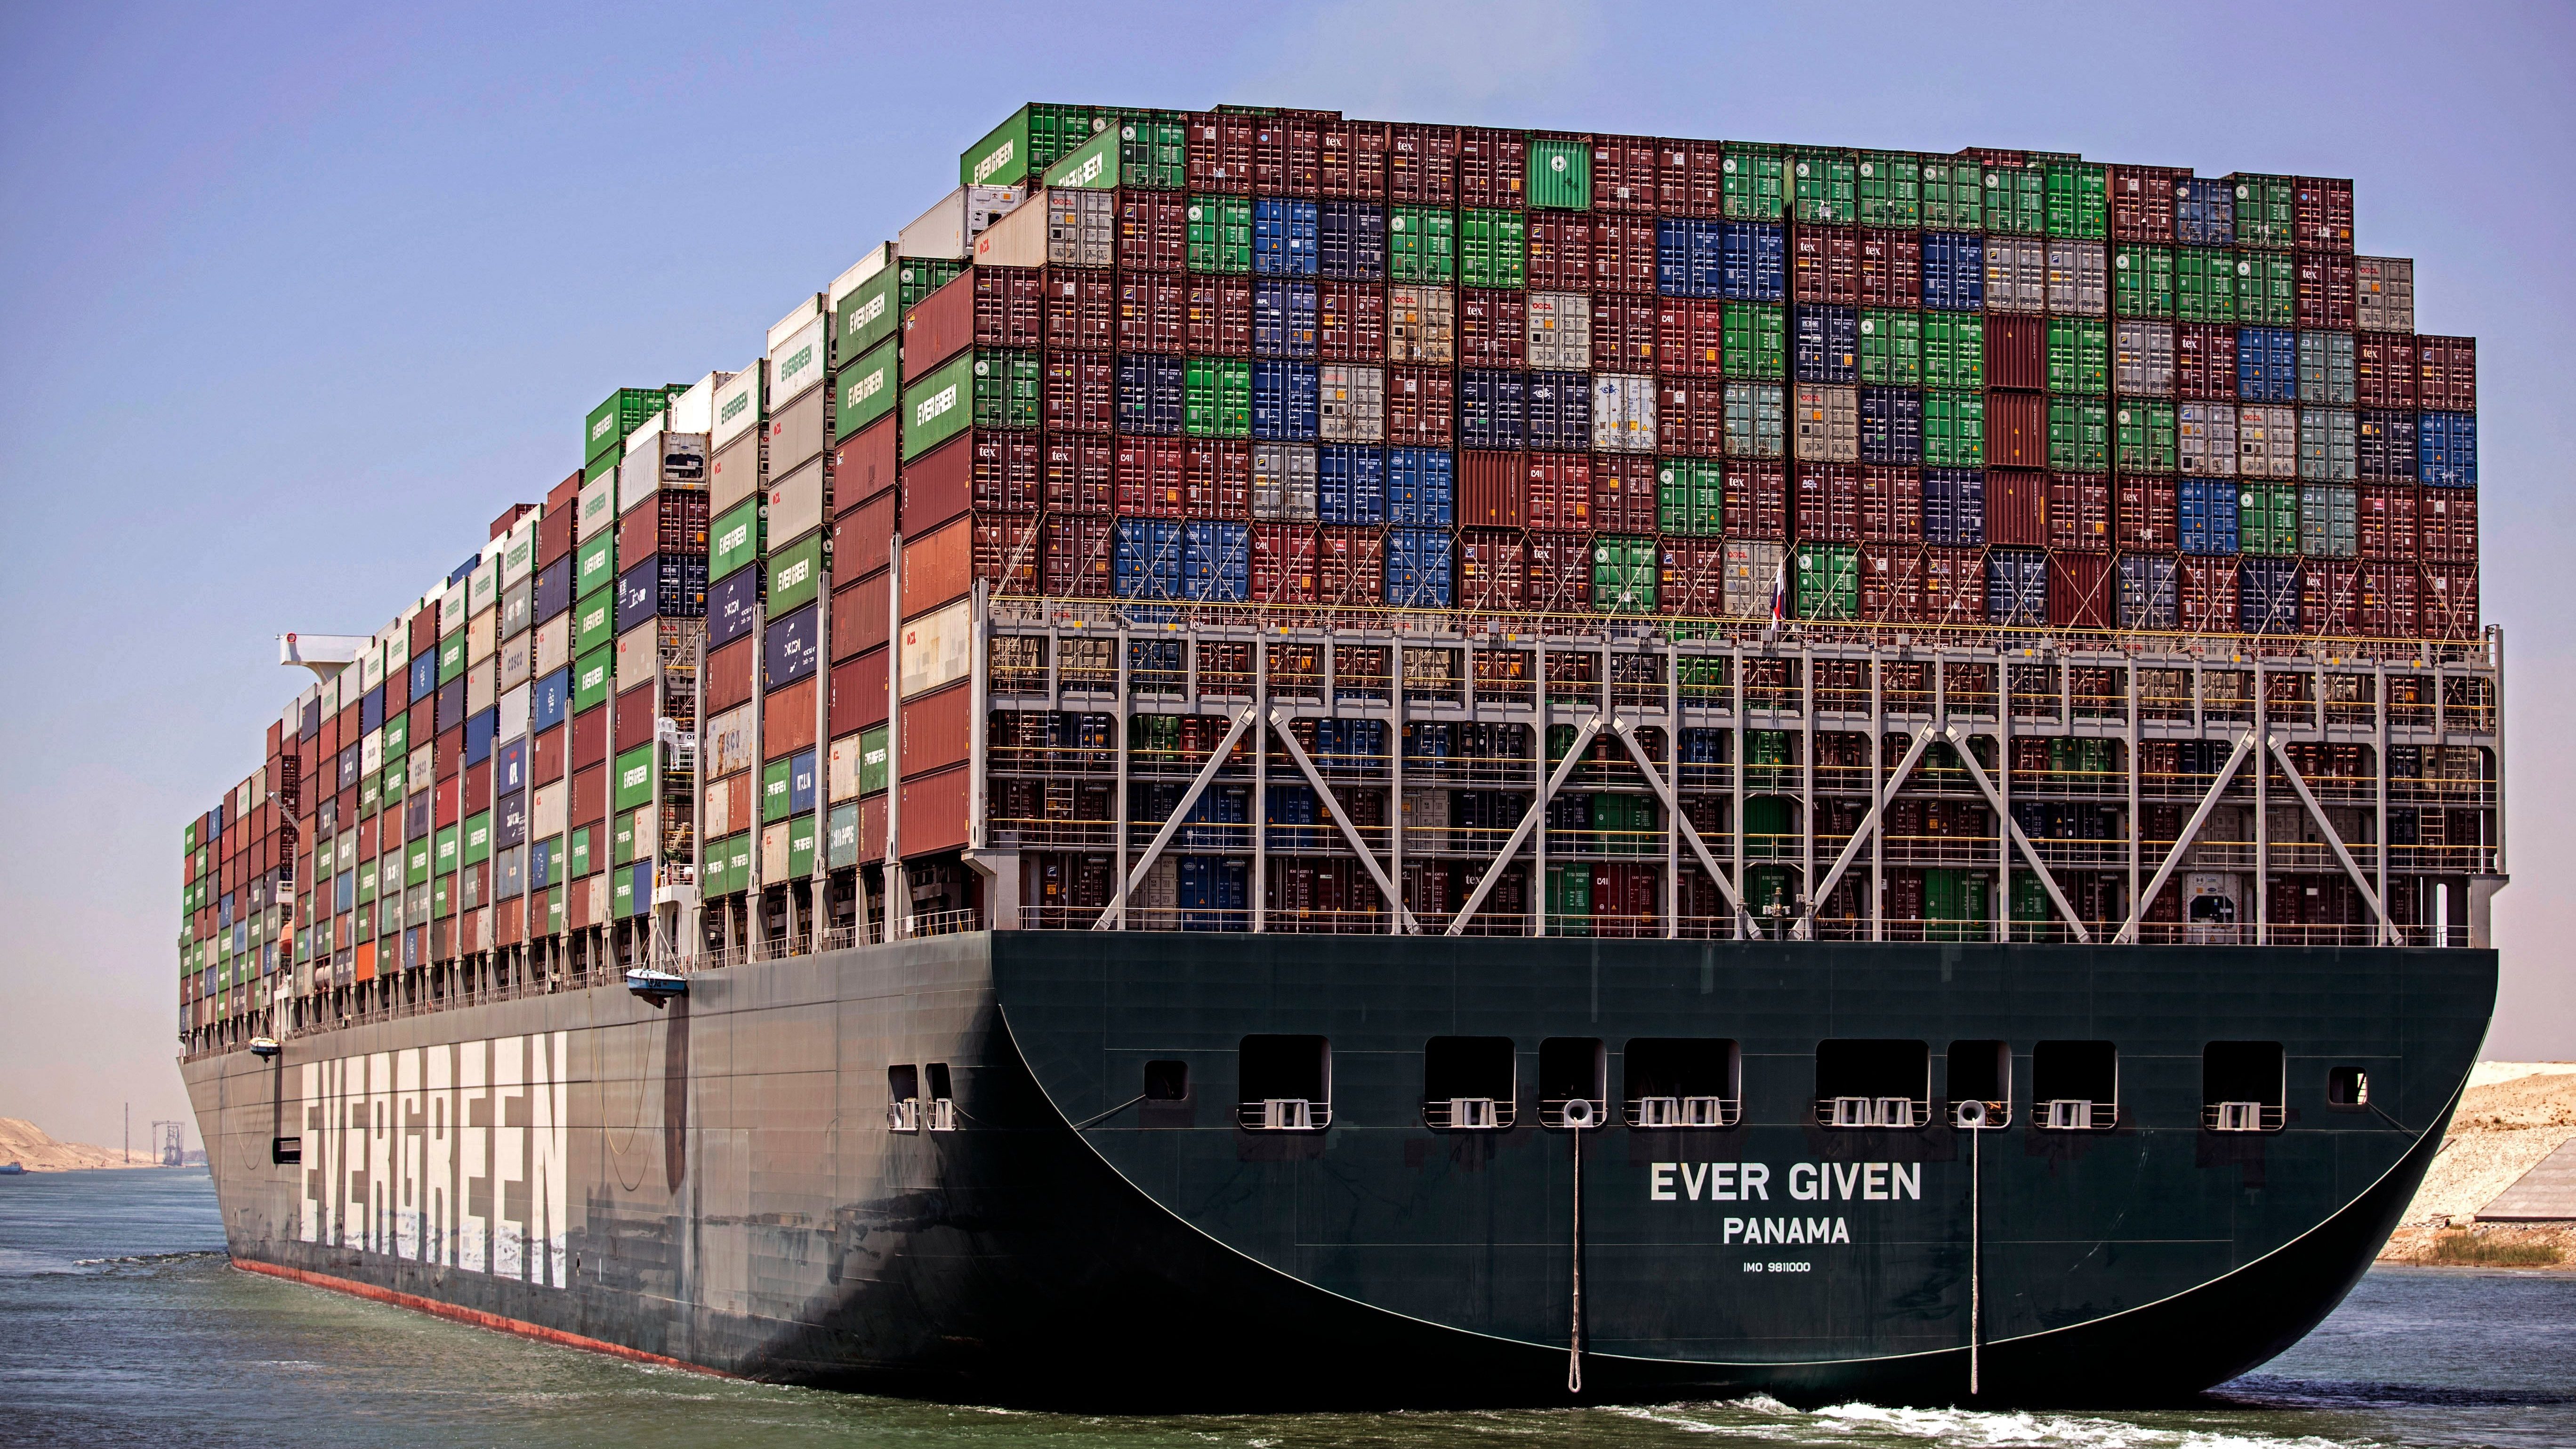 cargo container ship